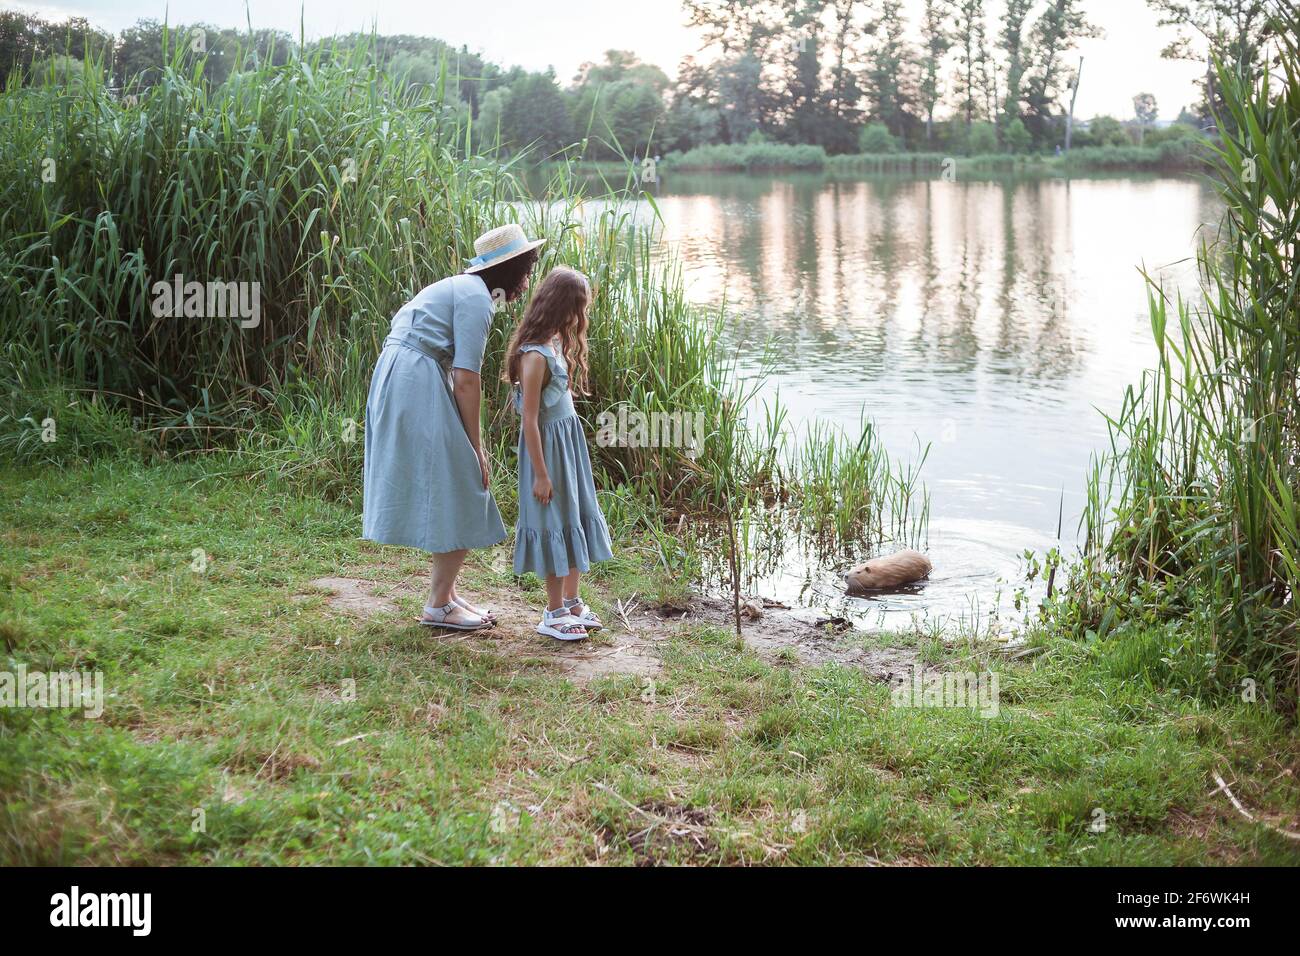 Une fille se tient sur la rive du lac et regarde la nutrition dans l'eau Banque D'Images